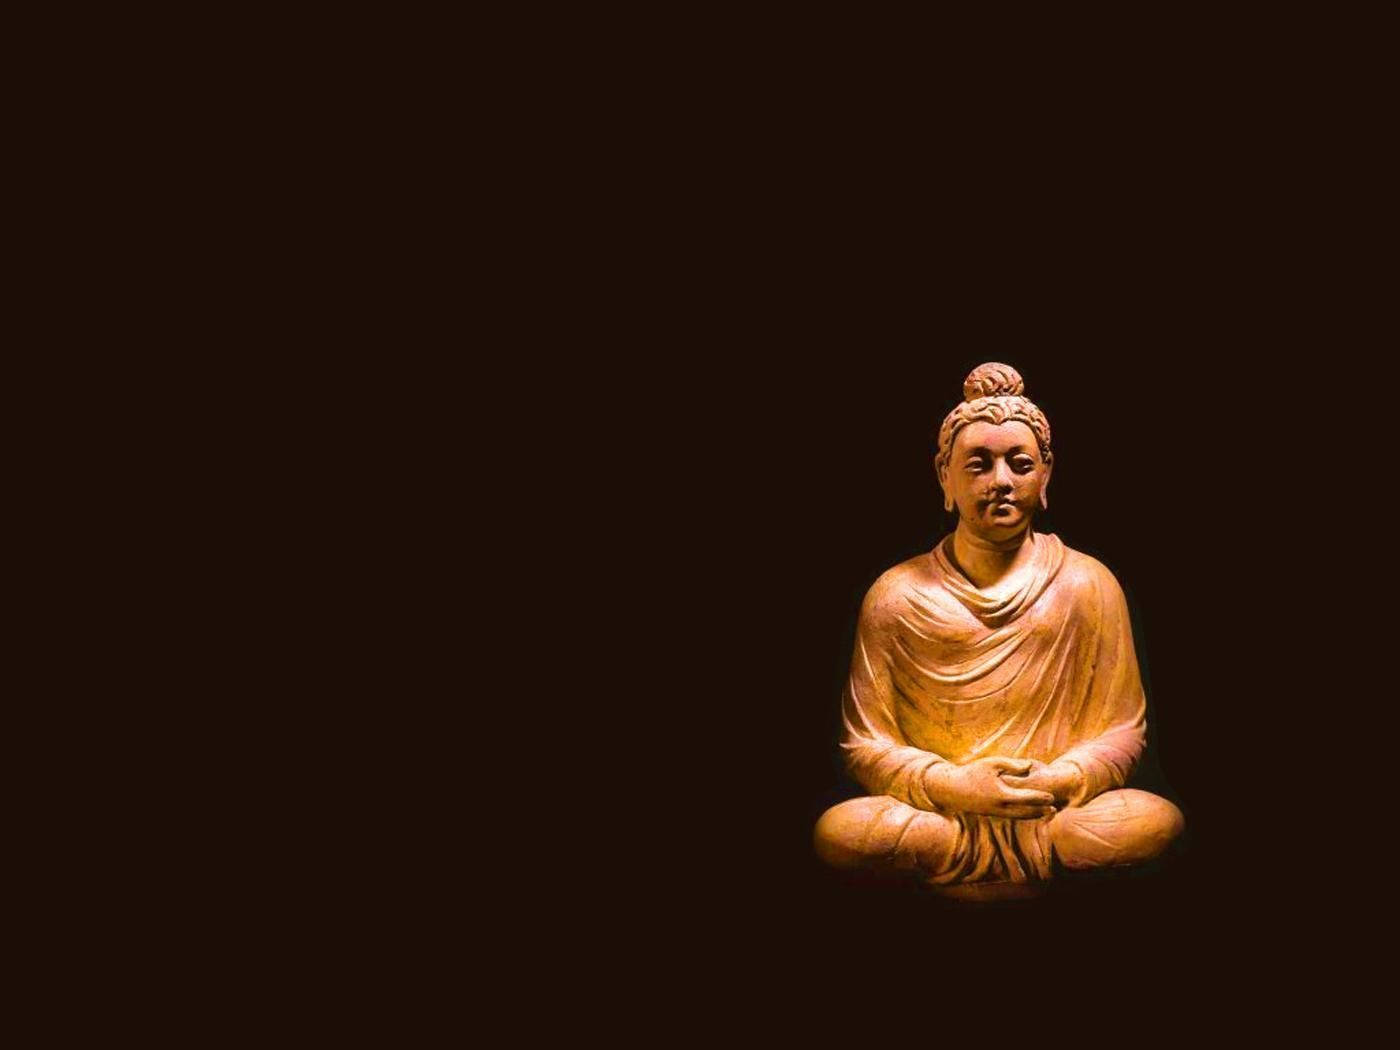 Buddha 3d Wooden Sculpture Background